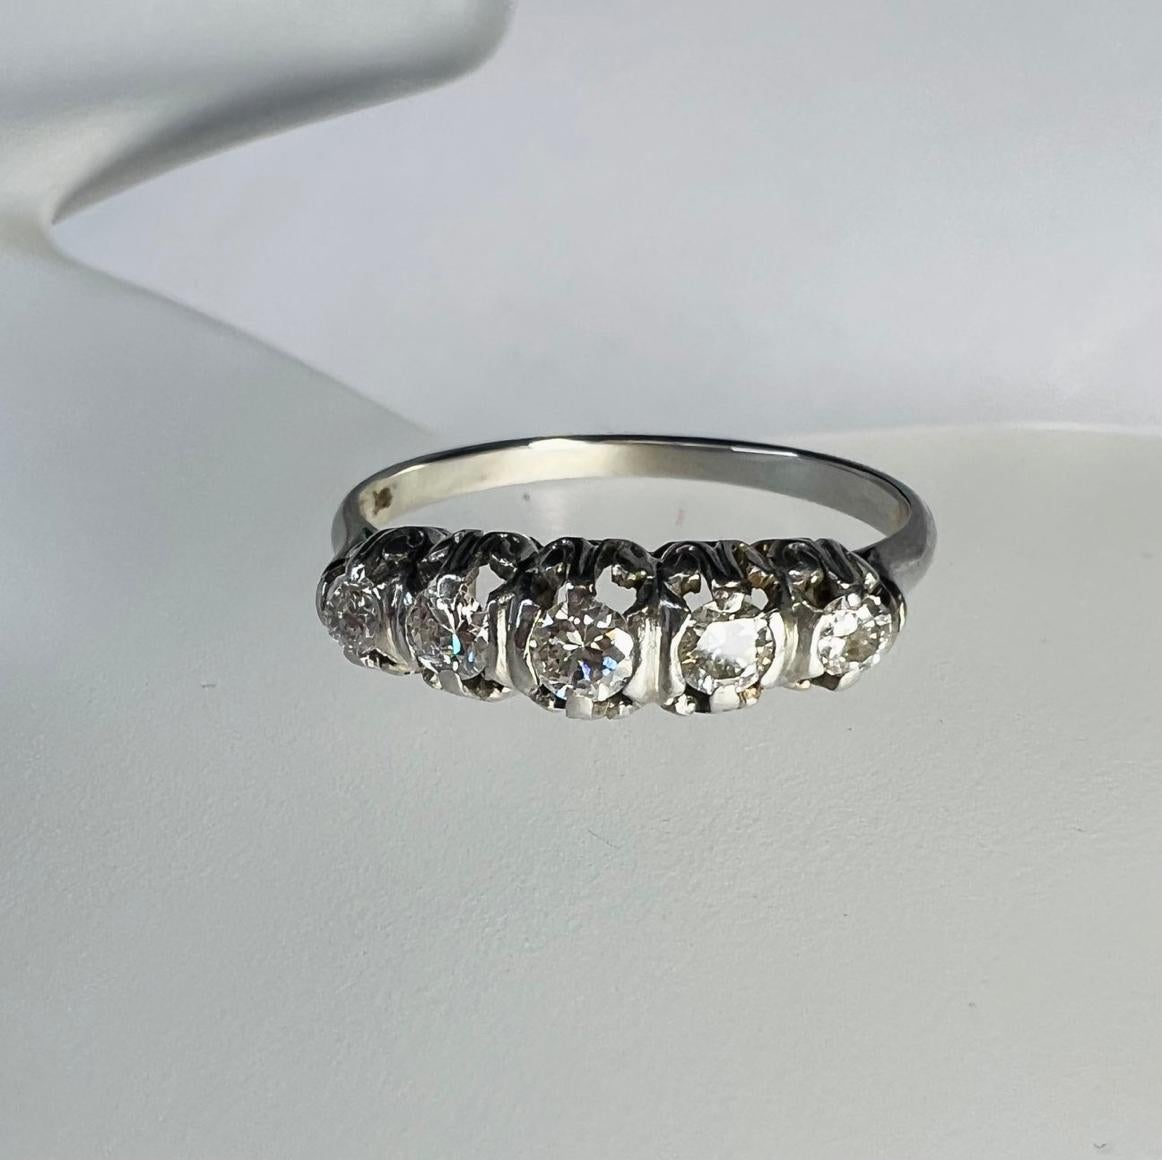 Présenter un,

Une bague édouardienne avec un diamant serti sur un anneau en or blanc.

Les diamants sont naturels et extraits de la terre, approximativement 0,35ctw

L'anneau a une largeur de 4 mm, une hauteur de 4 mm et une tige de 1 mm

Poids